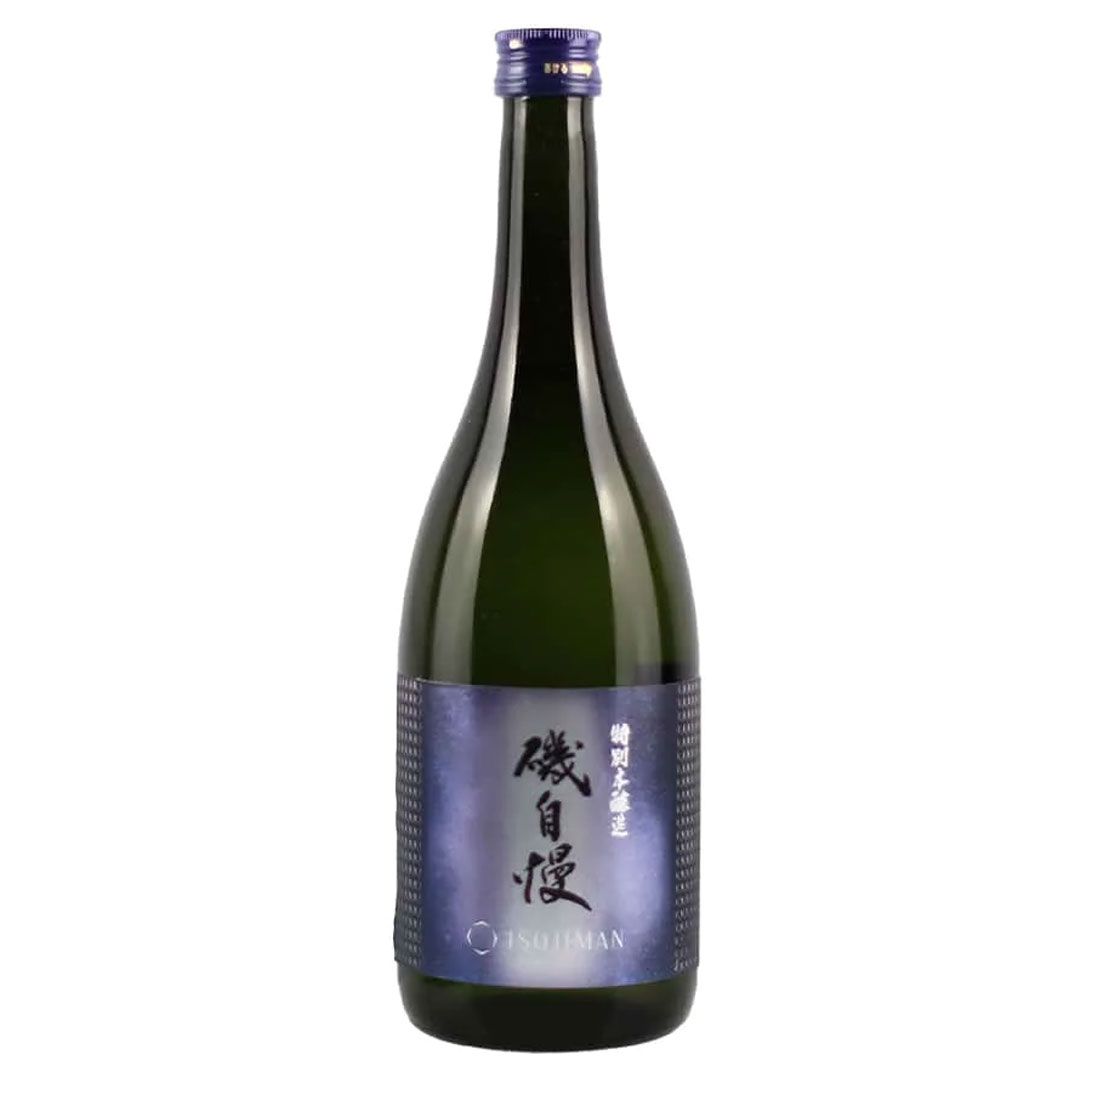 Bottle-Isojiman-Gokujyou-Tokubetsu-Honjyozo